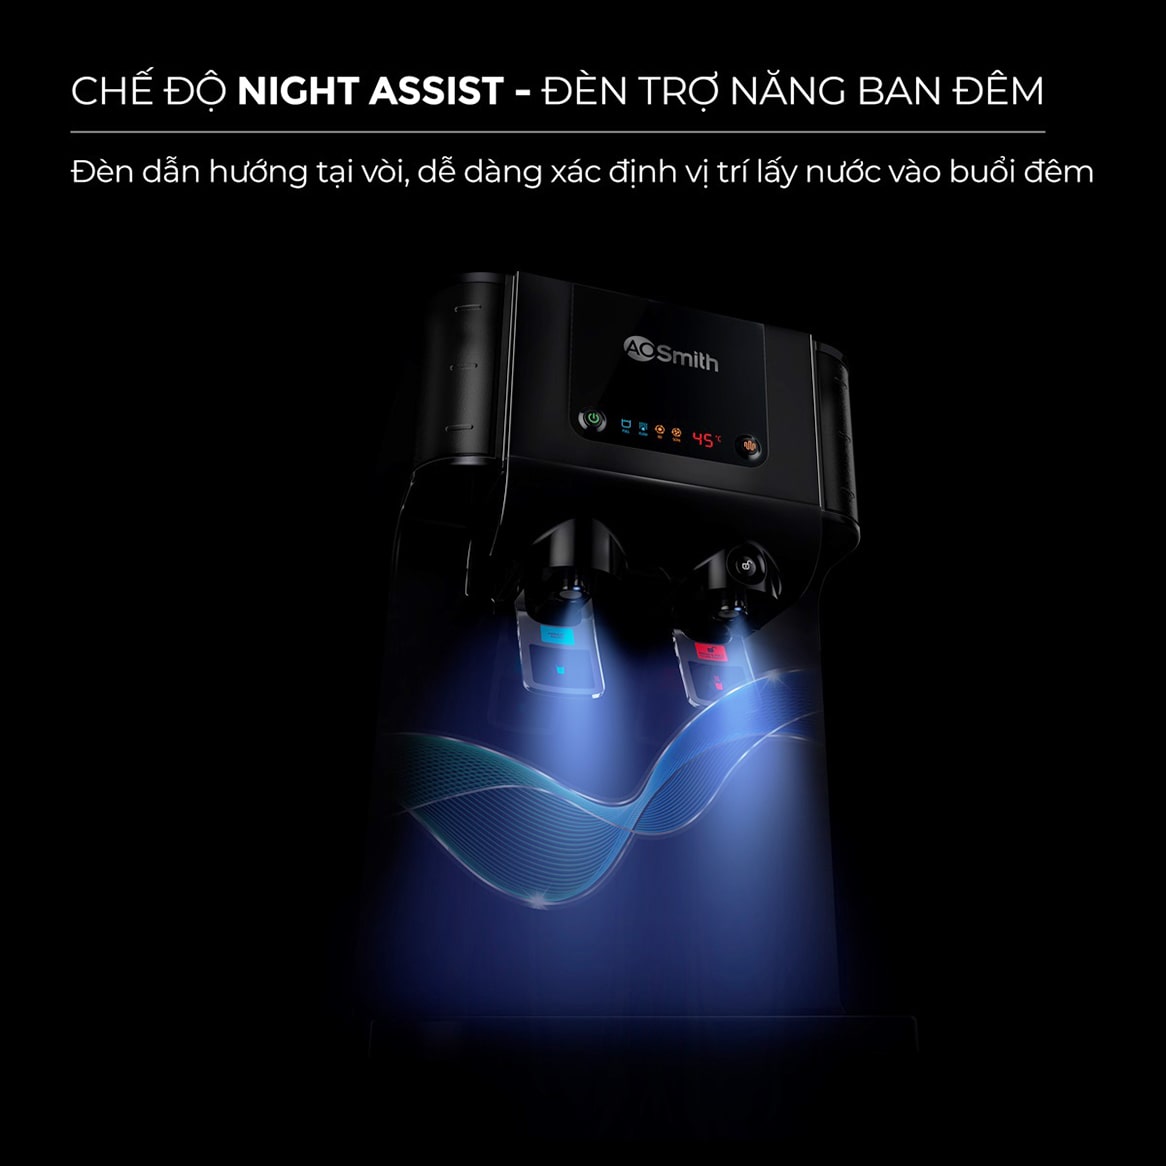 Sản phẩm AoSmith P6 được trang bị thêm đèn trợ năng ban đêm